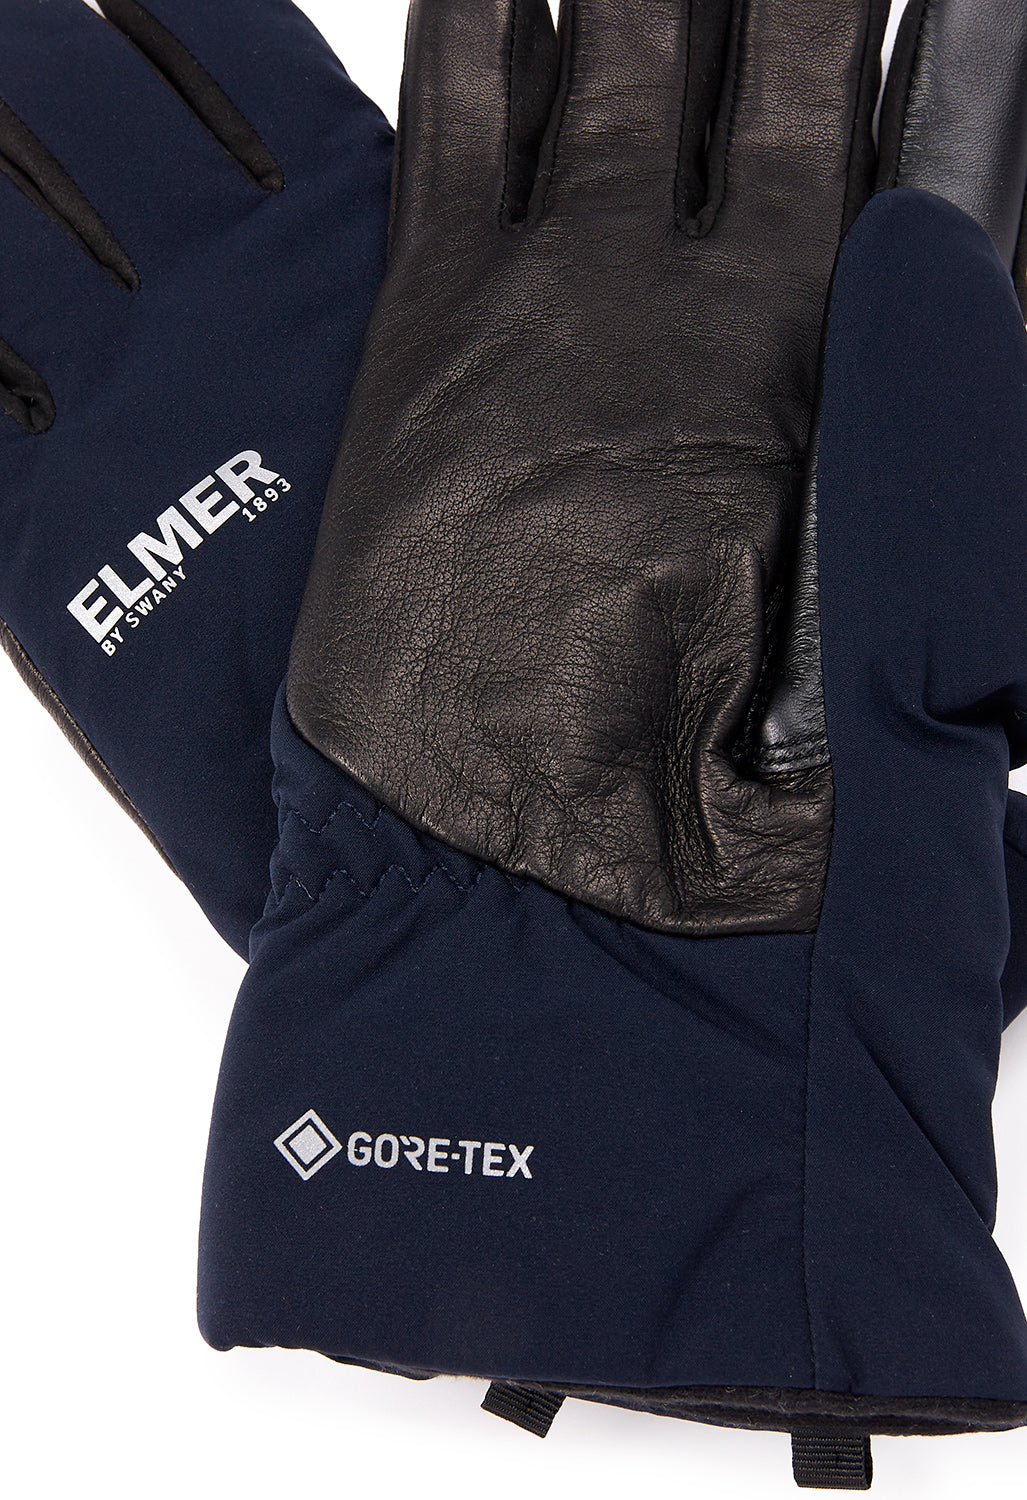 Elmer GORE-TEX Gloves - Navy